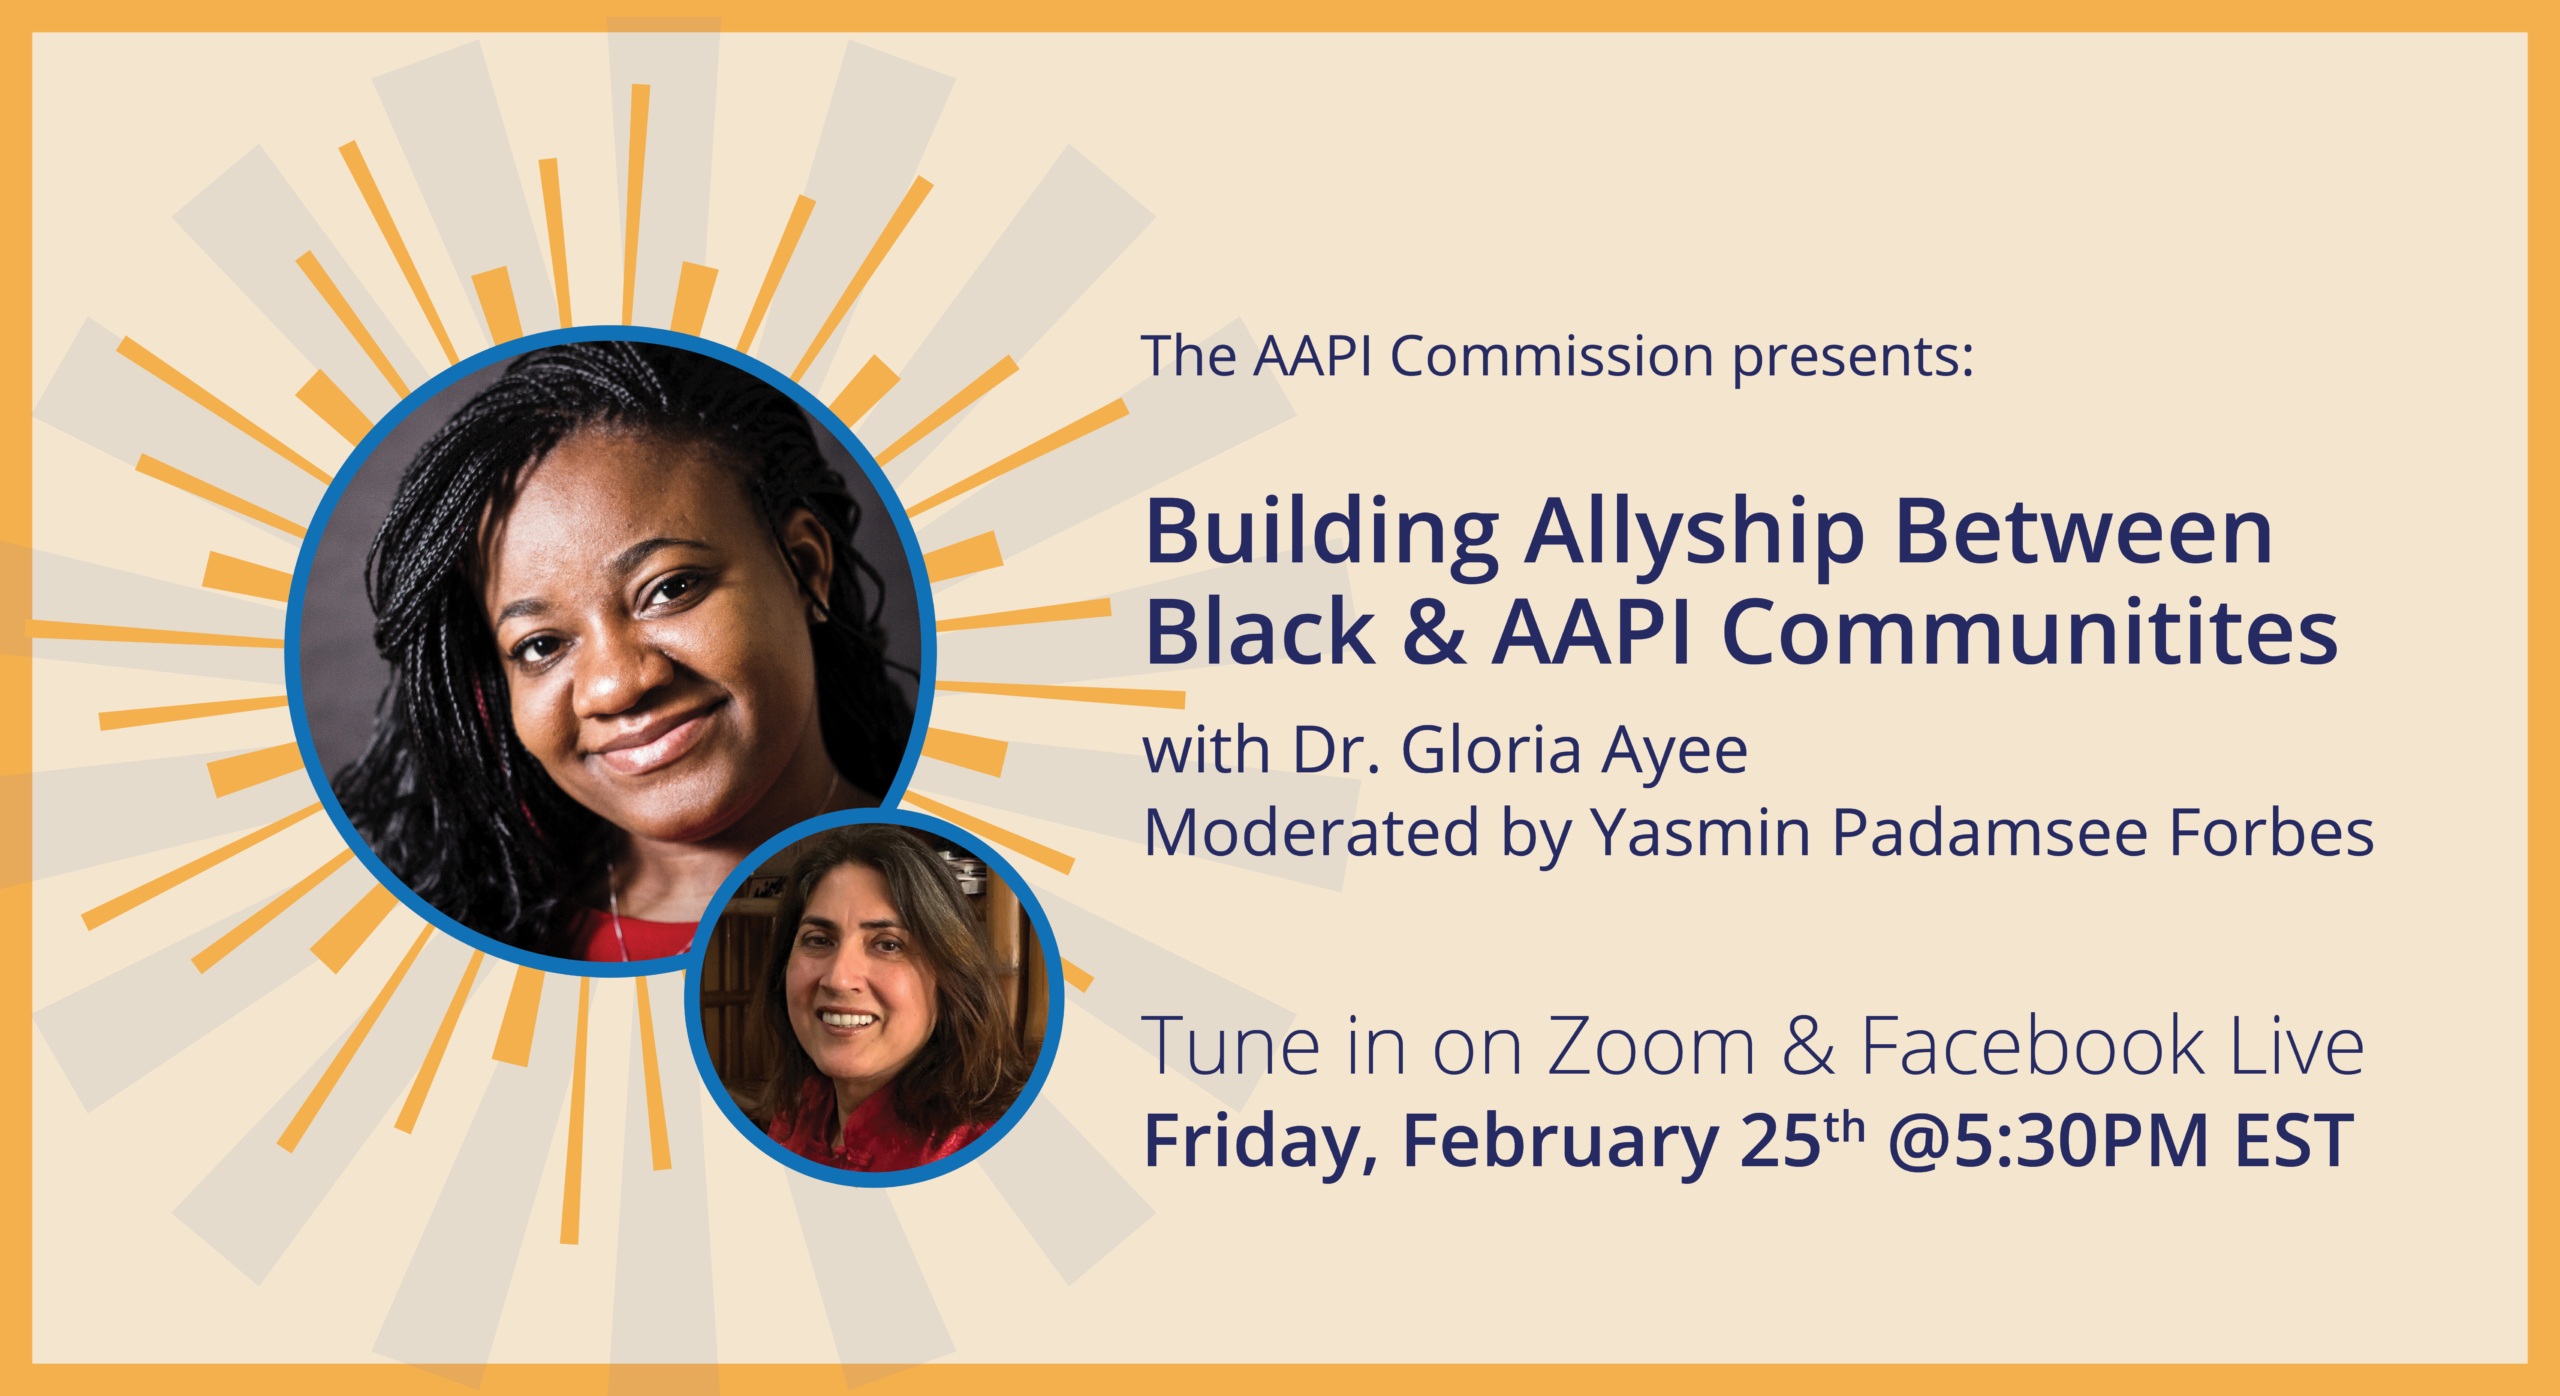 काला इतिहास महीने की घटना: काले और AAPI समुदायों के बीच सहयोगी का निर्माण | फ़रवरी 25 @ 5:30 PM EST